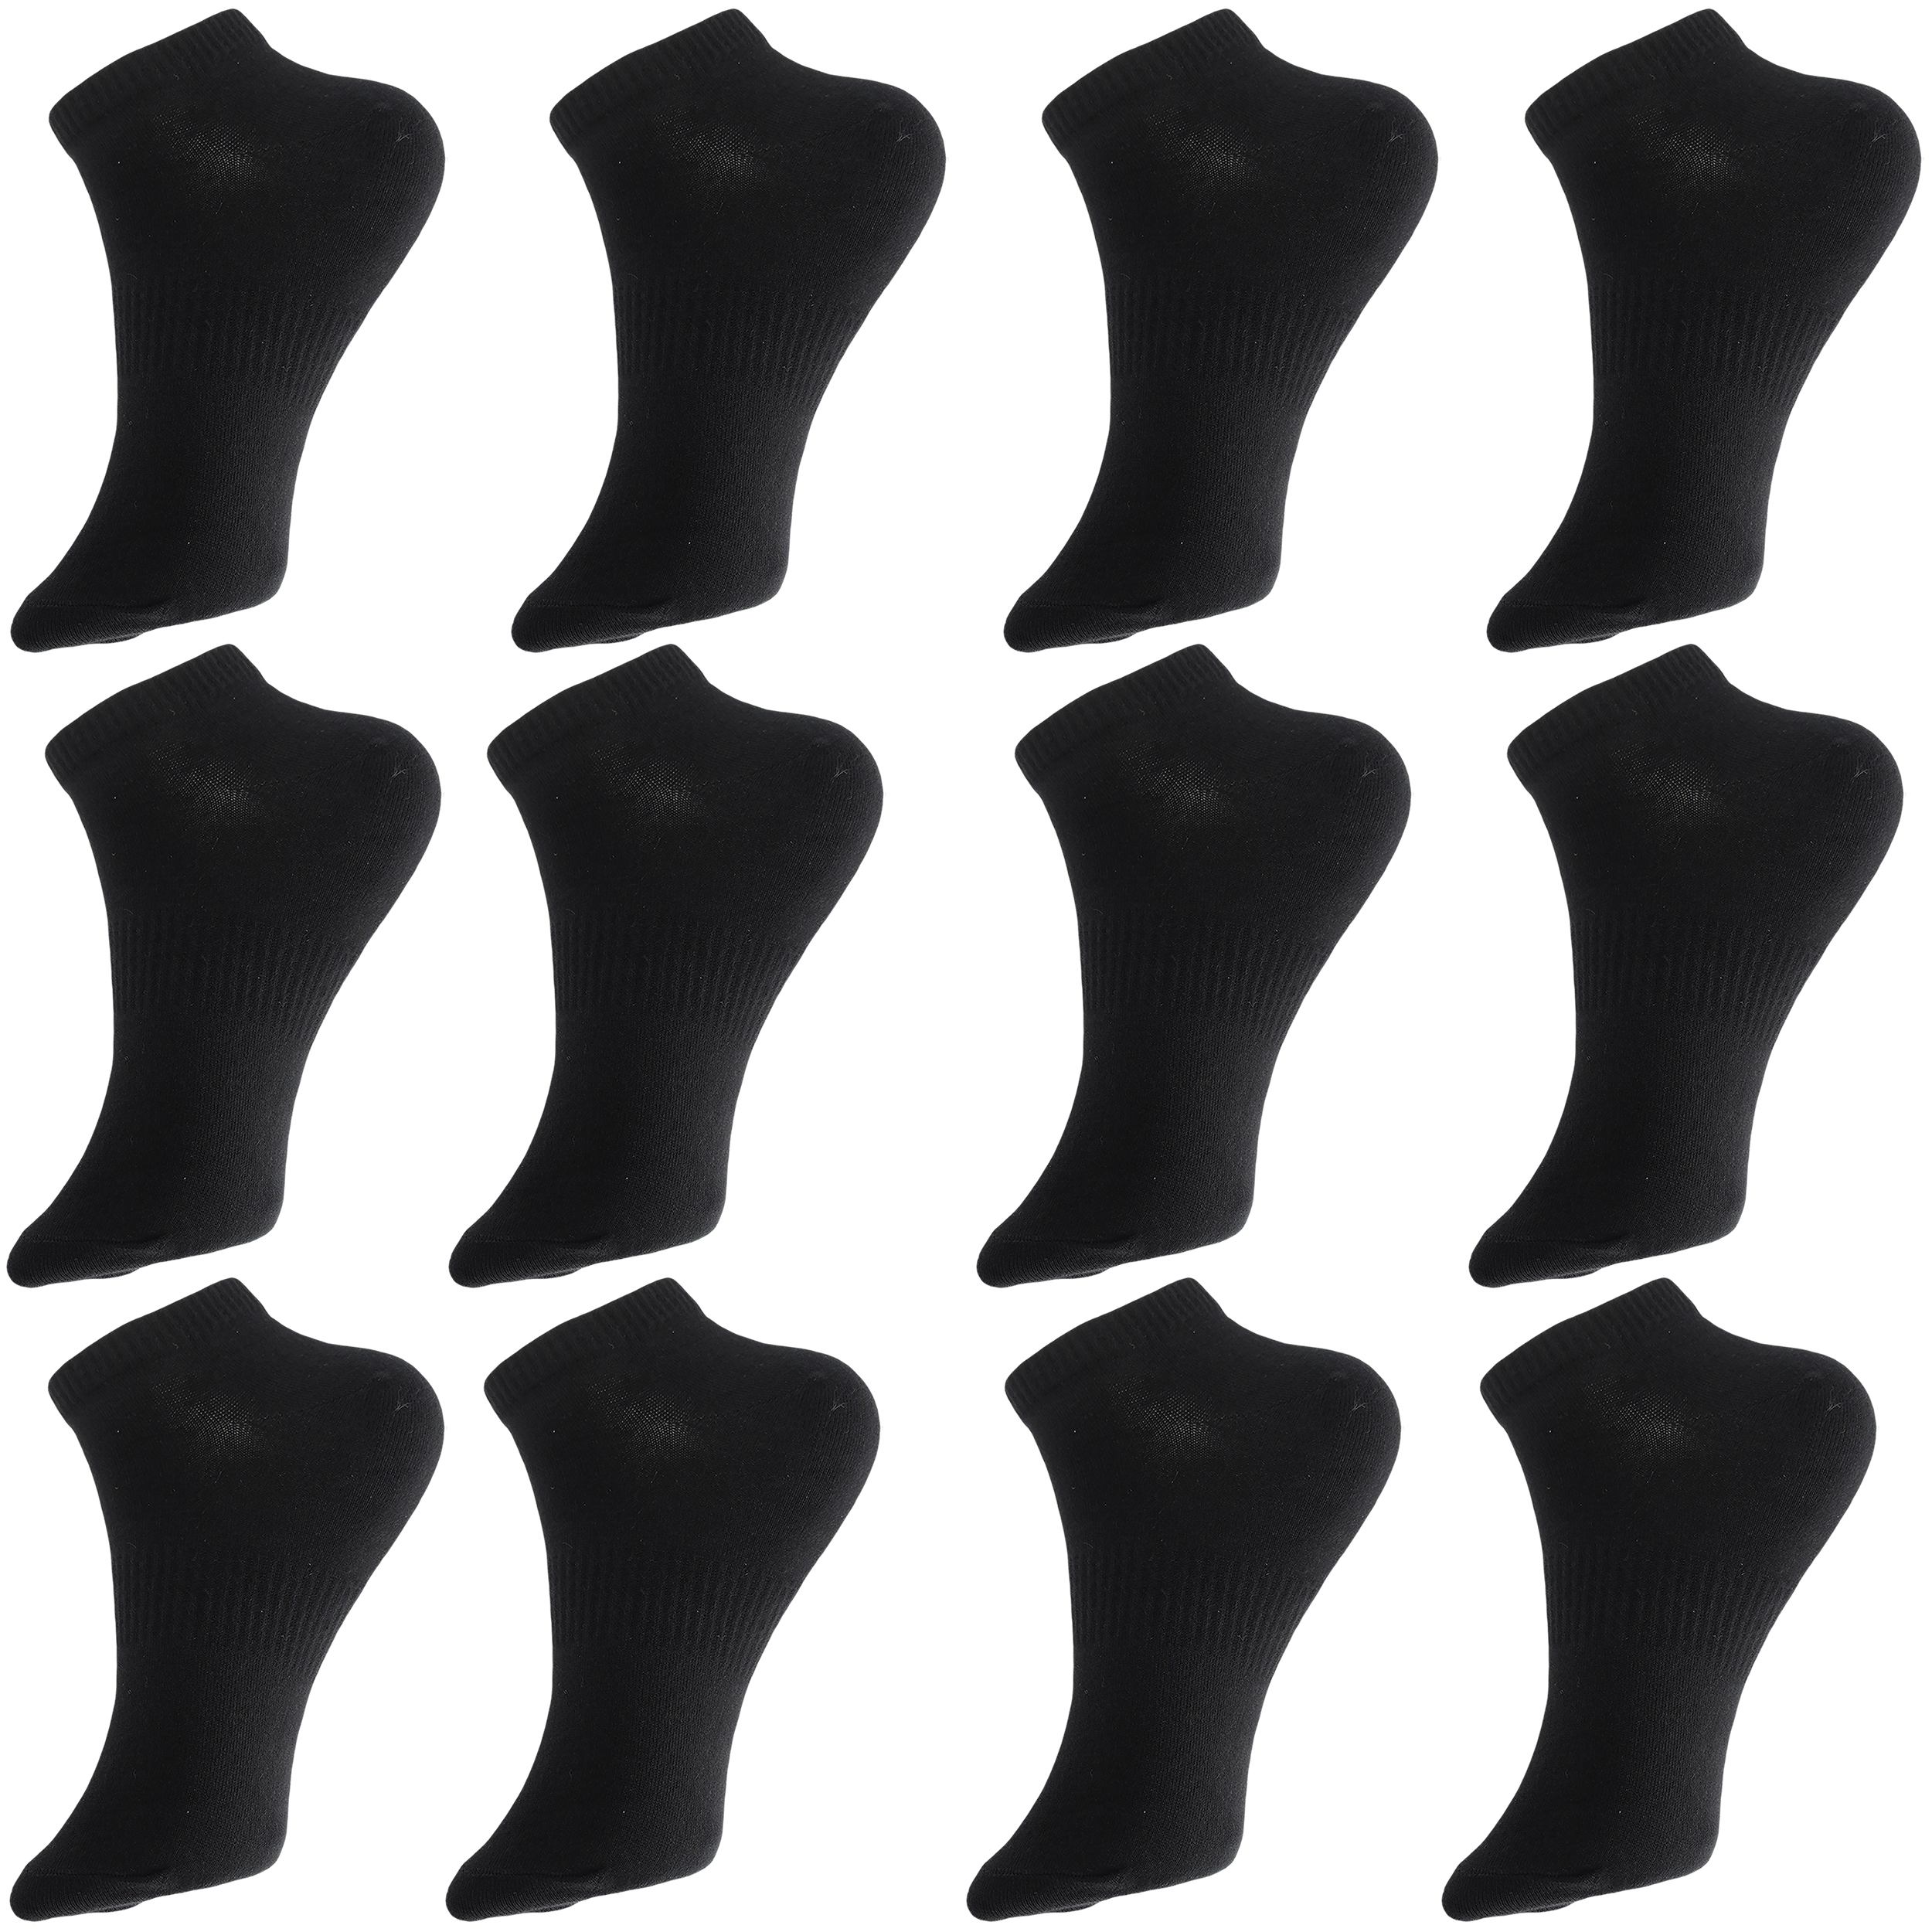 جوراب ورزشی ساق کوتاه مردانه ادیب مدل اسپرت کش انگلیسی کد MNSPT رنگ مشکی بسته 12 عددی